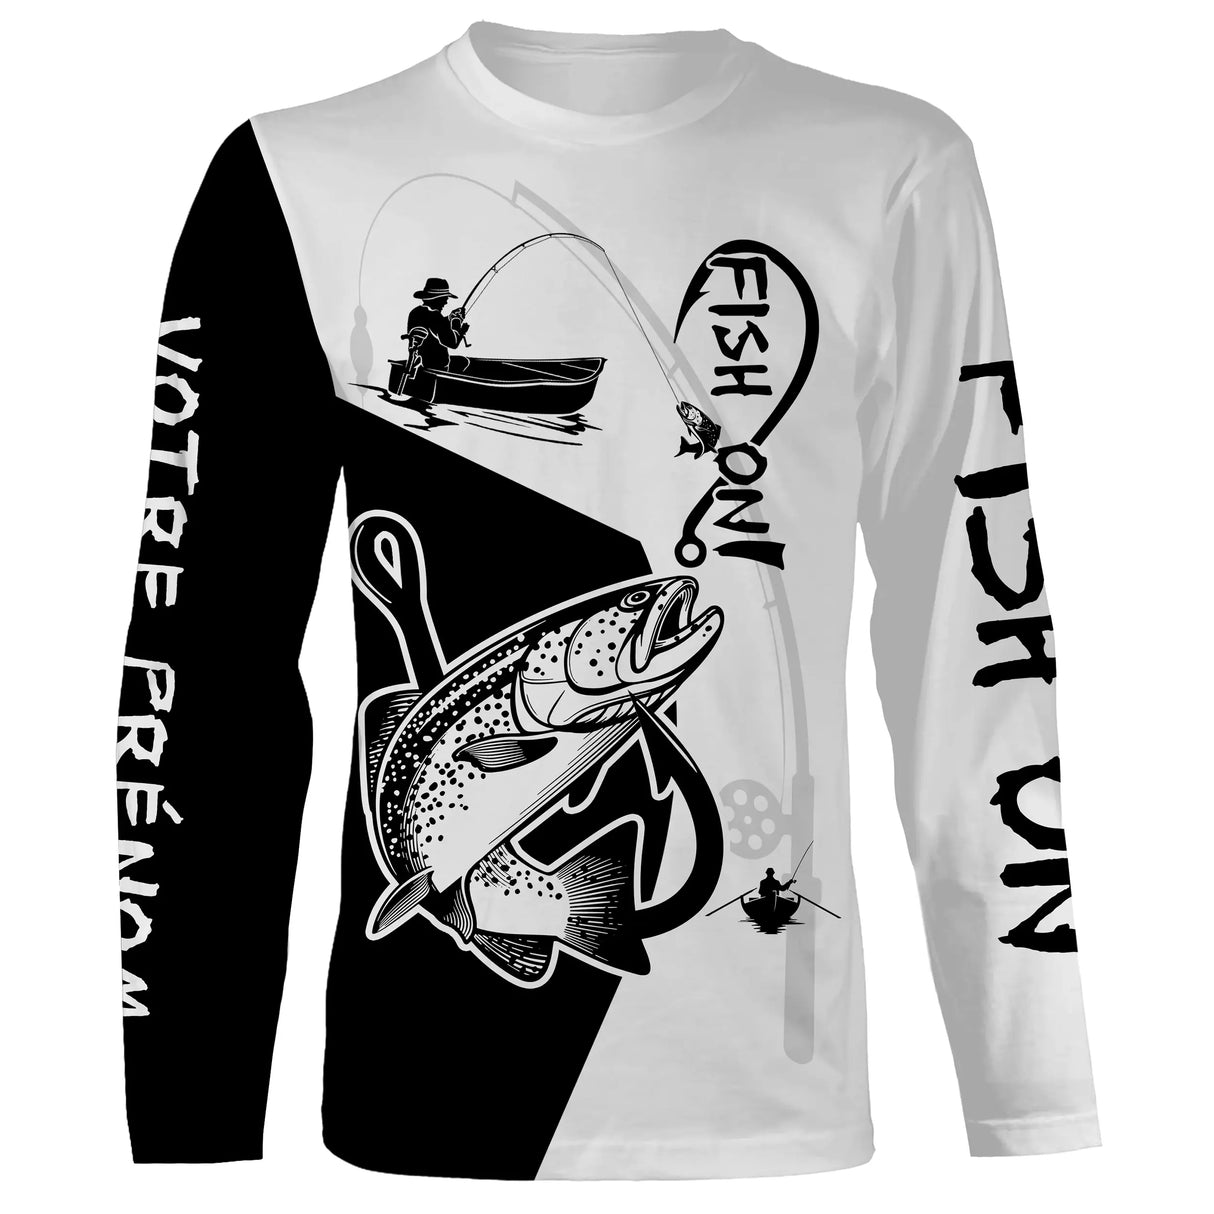 T-Shirt de Pêche Personnalisé "Fish On" avec Graphique Truite Dynamique - Style et Performance - CT20072212 T-shirt All Over Manches Longues Unisexe